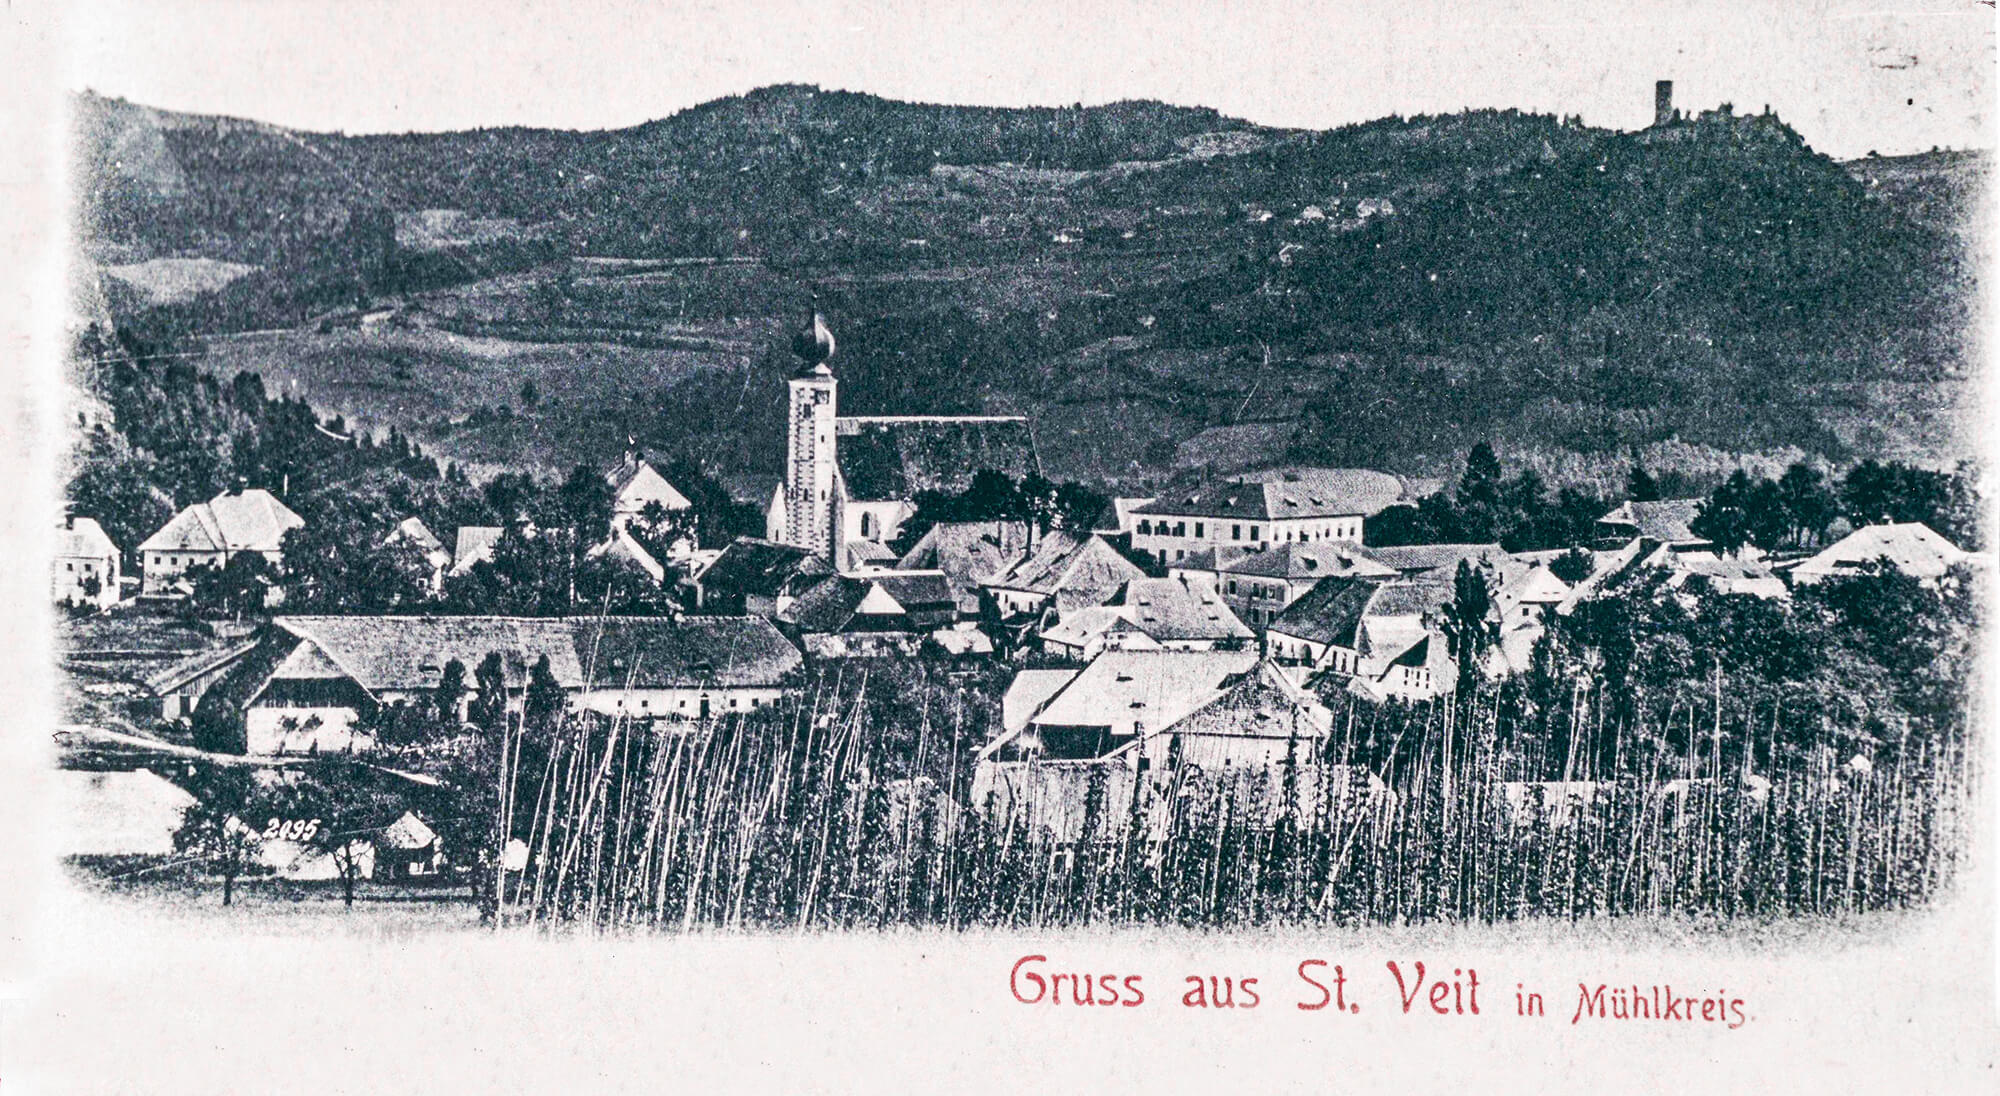 Ansichtskarte von St. Veit im Mühlkreis ©Herausgeber C. Becker, Linz, um 1900, Sammlung Norbert Kasberger